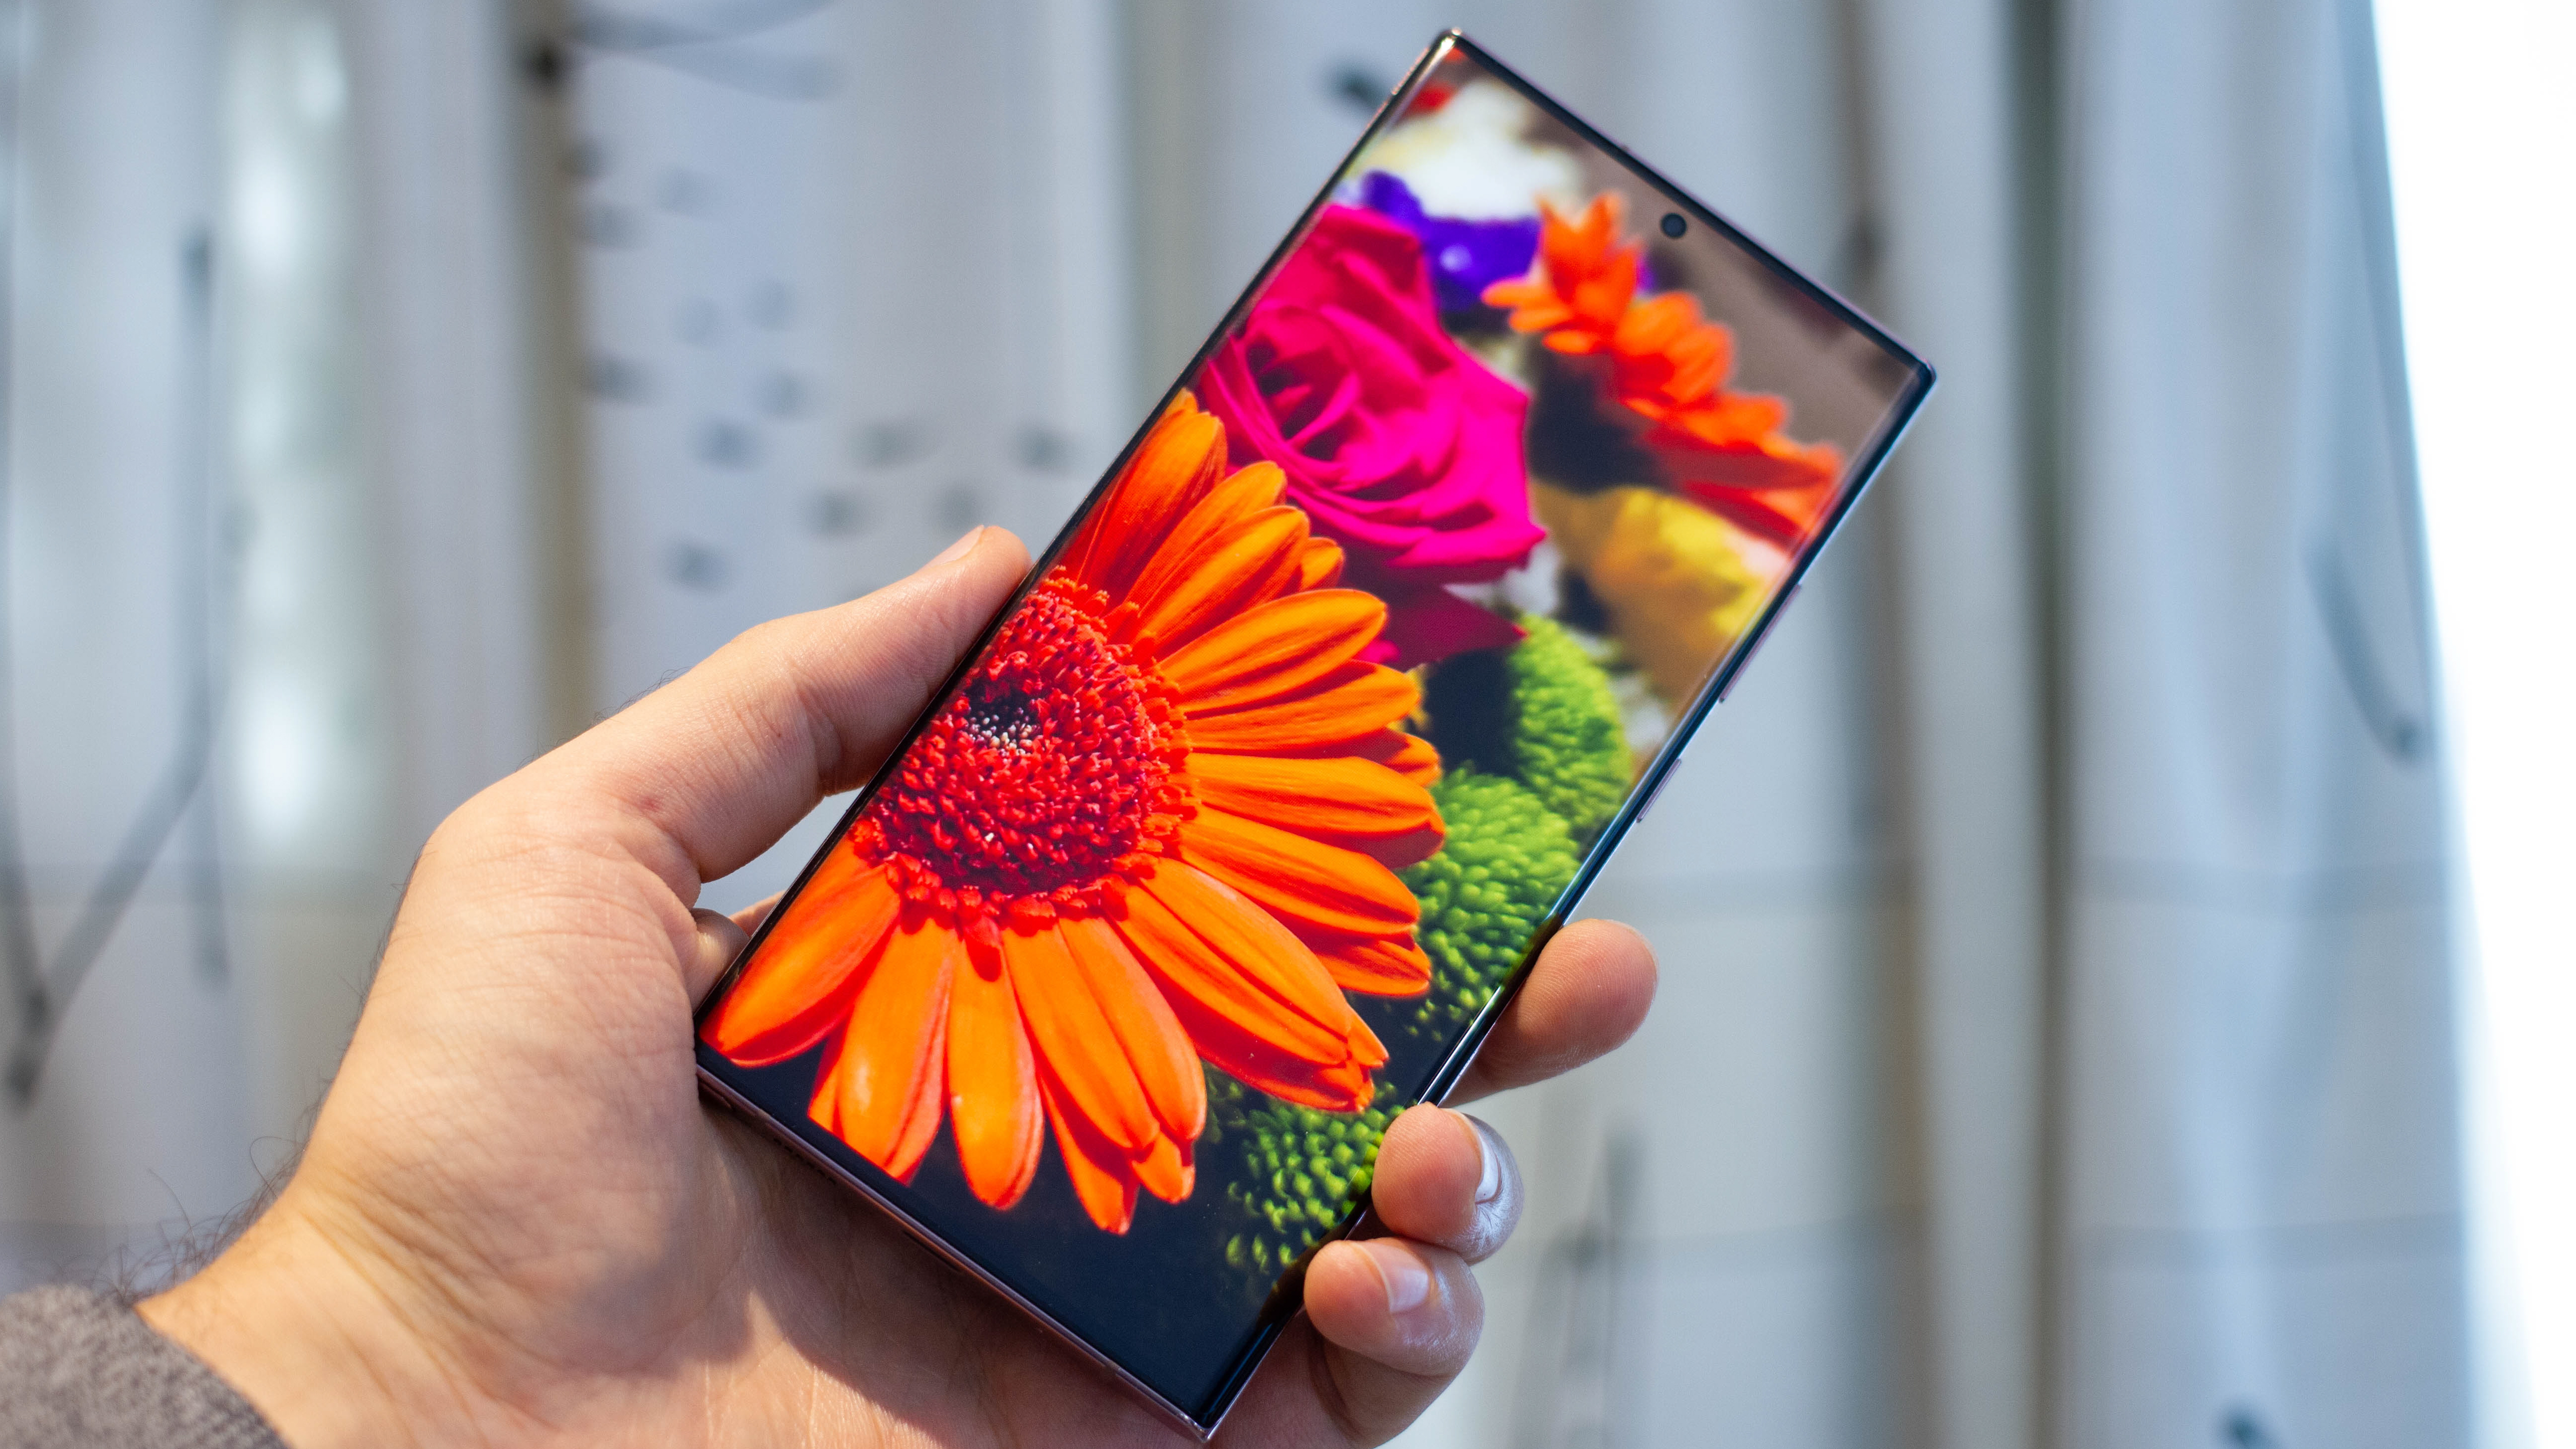 Đọc đánh giá chi tiết về Samsung Galaxy Note 20 Ultra 5G để biết tại sao sản phẩm này là lựa chọn tuyệt vời cho những ai muốn một chiếc điện thoại thông minh mạnh mẽ, đầy đủ tính năng và phong cách. Hình ảnh liên quan sẽ giúp bạn nhìn thấy thiết kế độc đáo và cấu hình mạnh mẽ của sản phẩm này. 